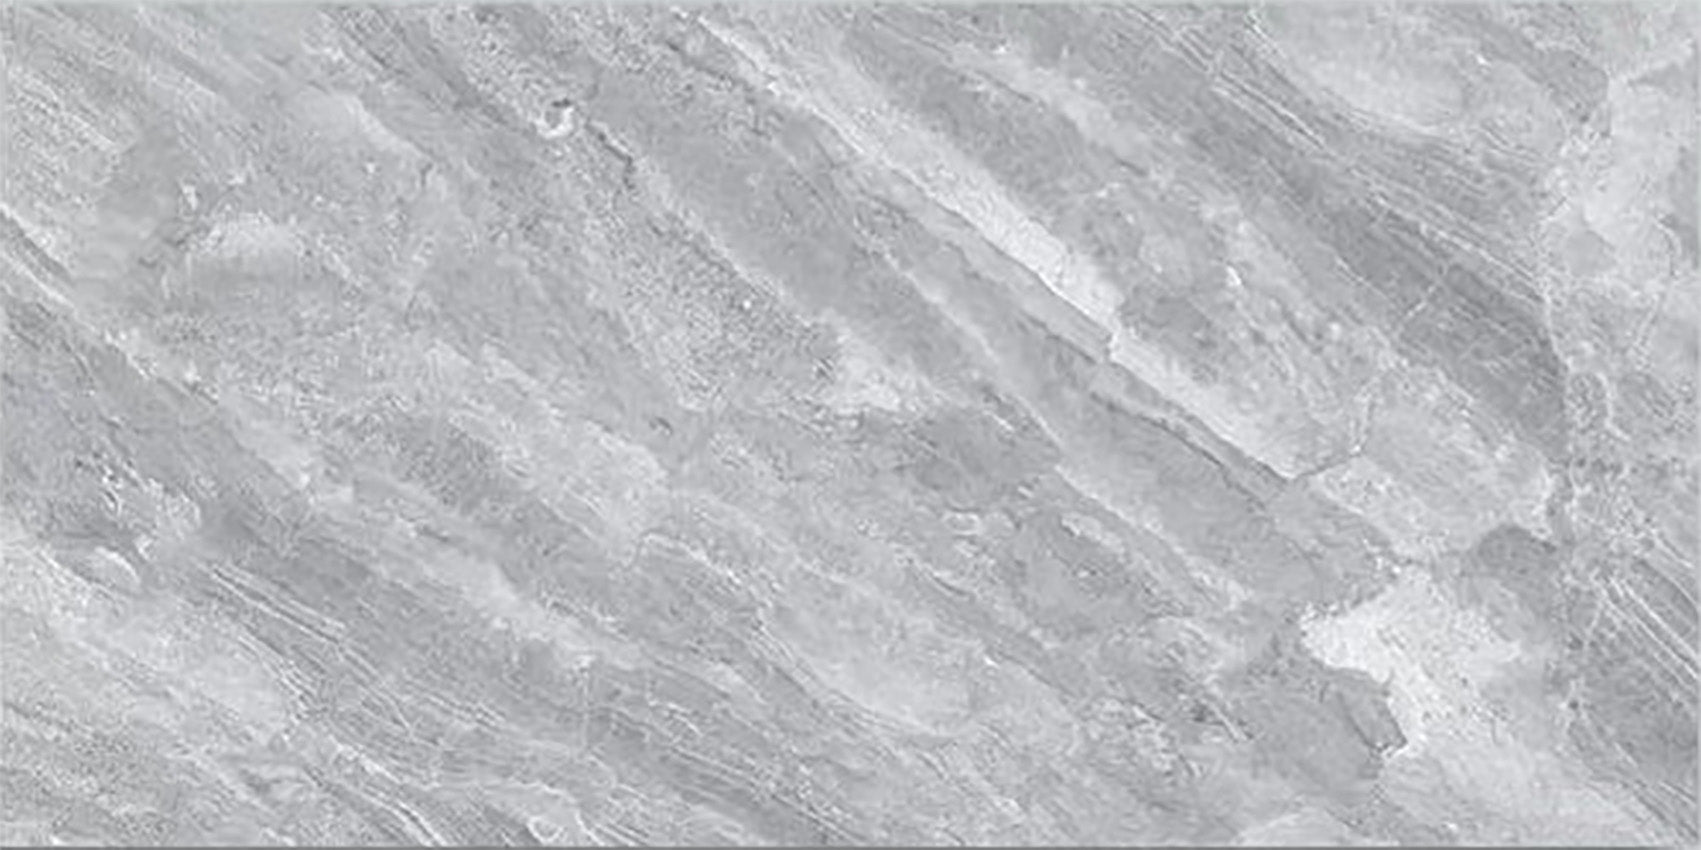 中國佛山瓷磚 China Foshan Marble Tiles Glossy 大理石瓷磚 連紋瓷磚 地磚 墻磚 釉面磚 亮光面 ZB311  30×60cm